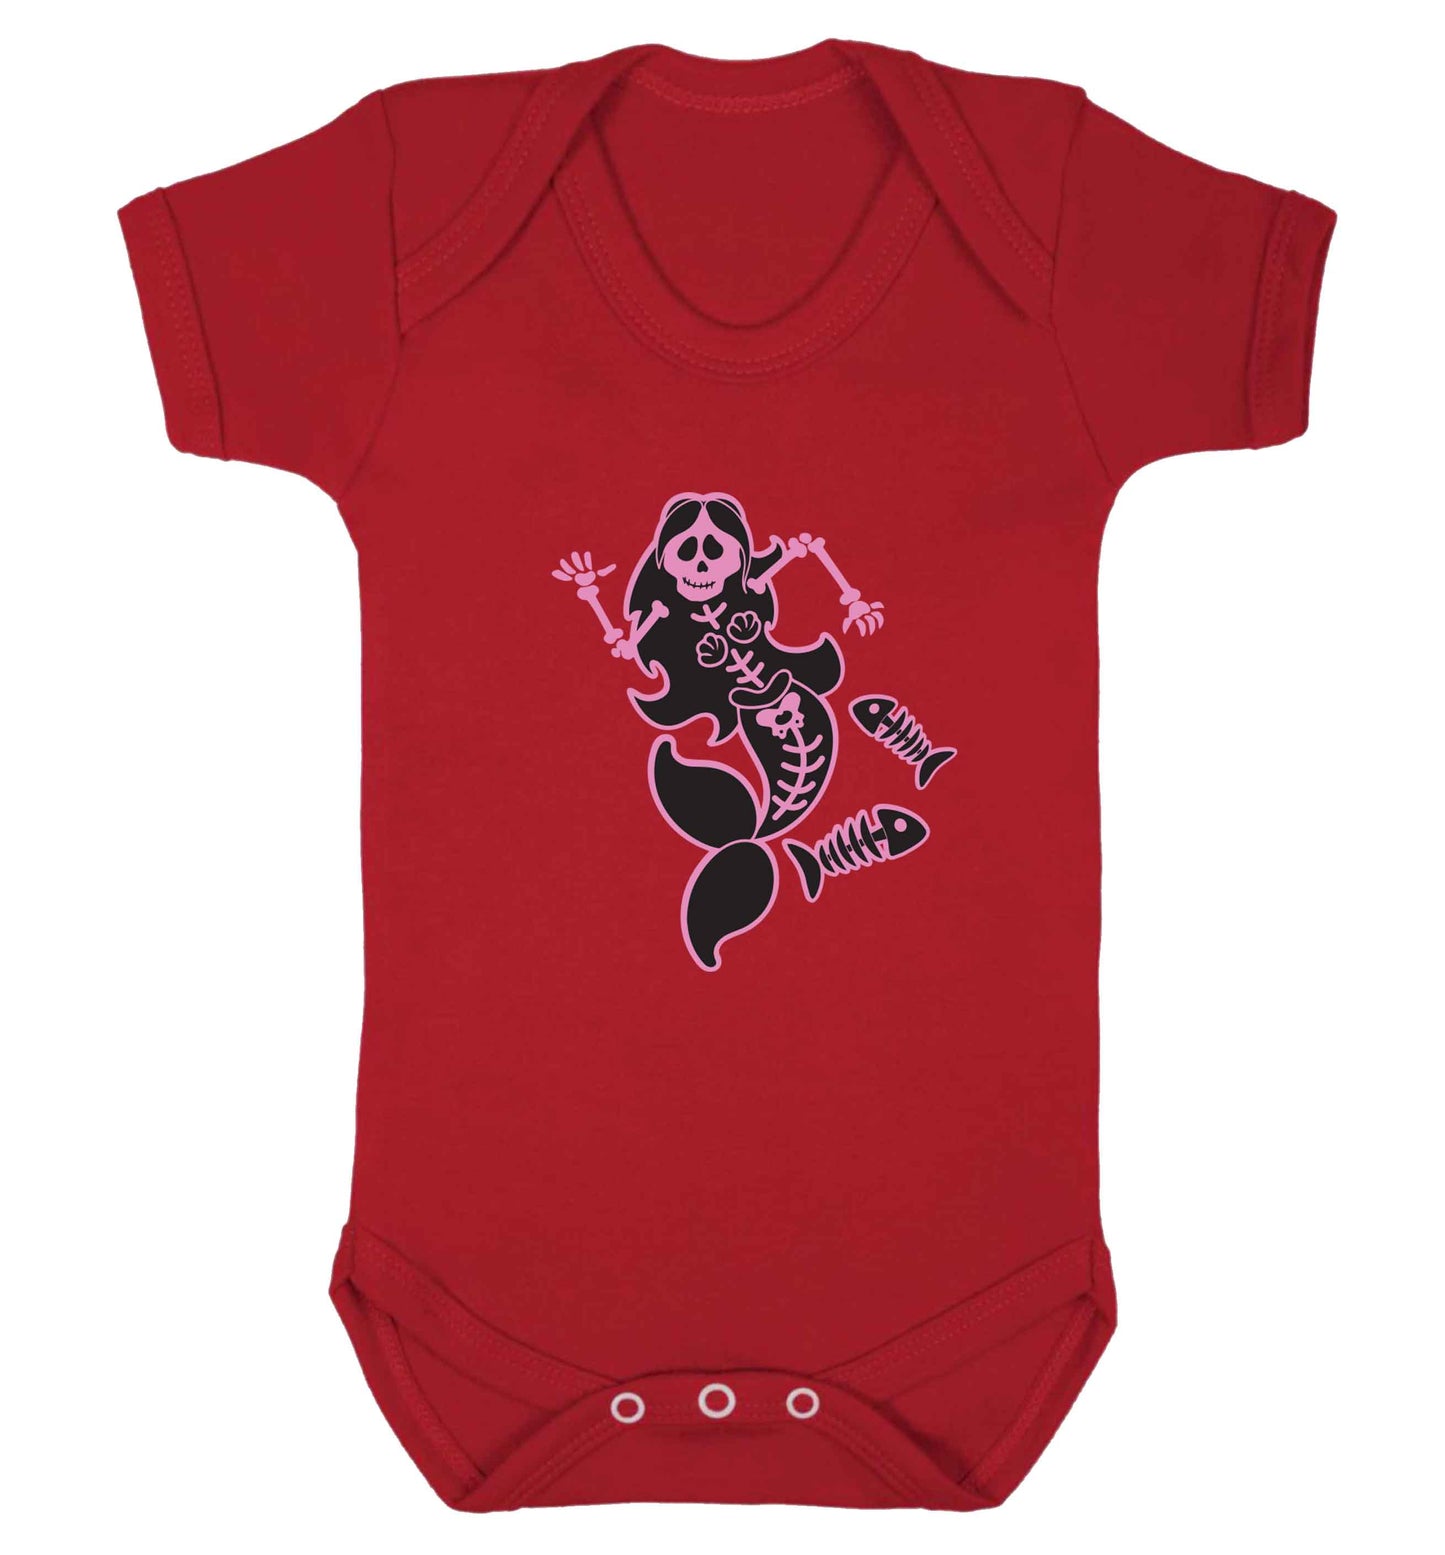 Skeleton mermaid baby vest red 18-24 months